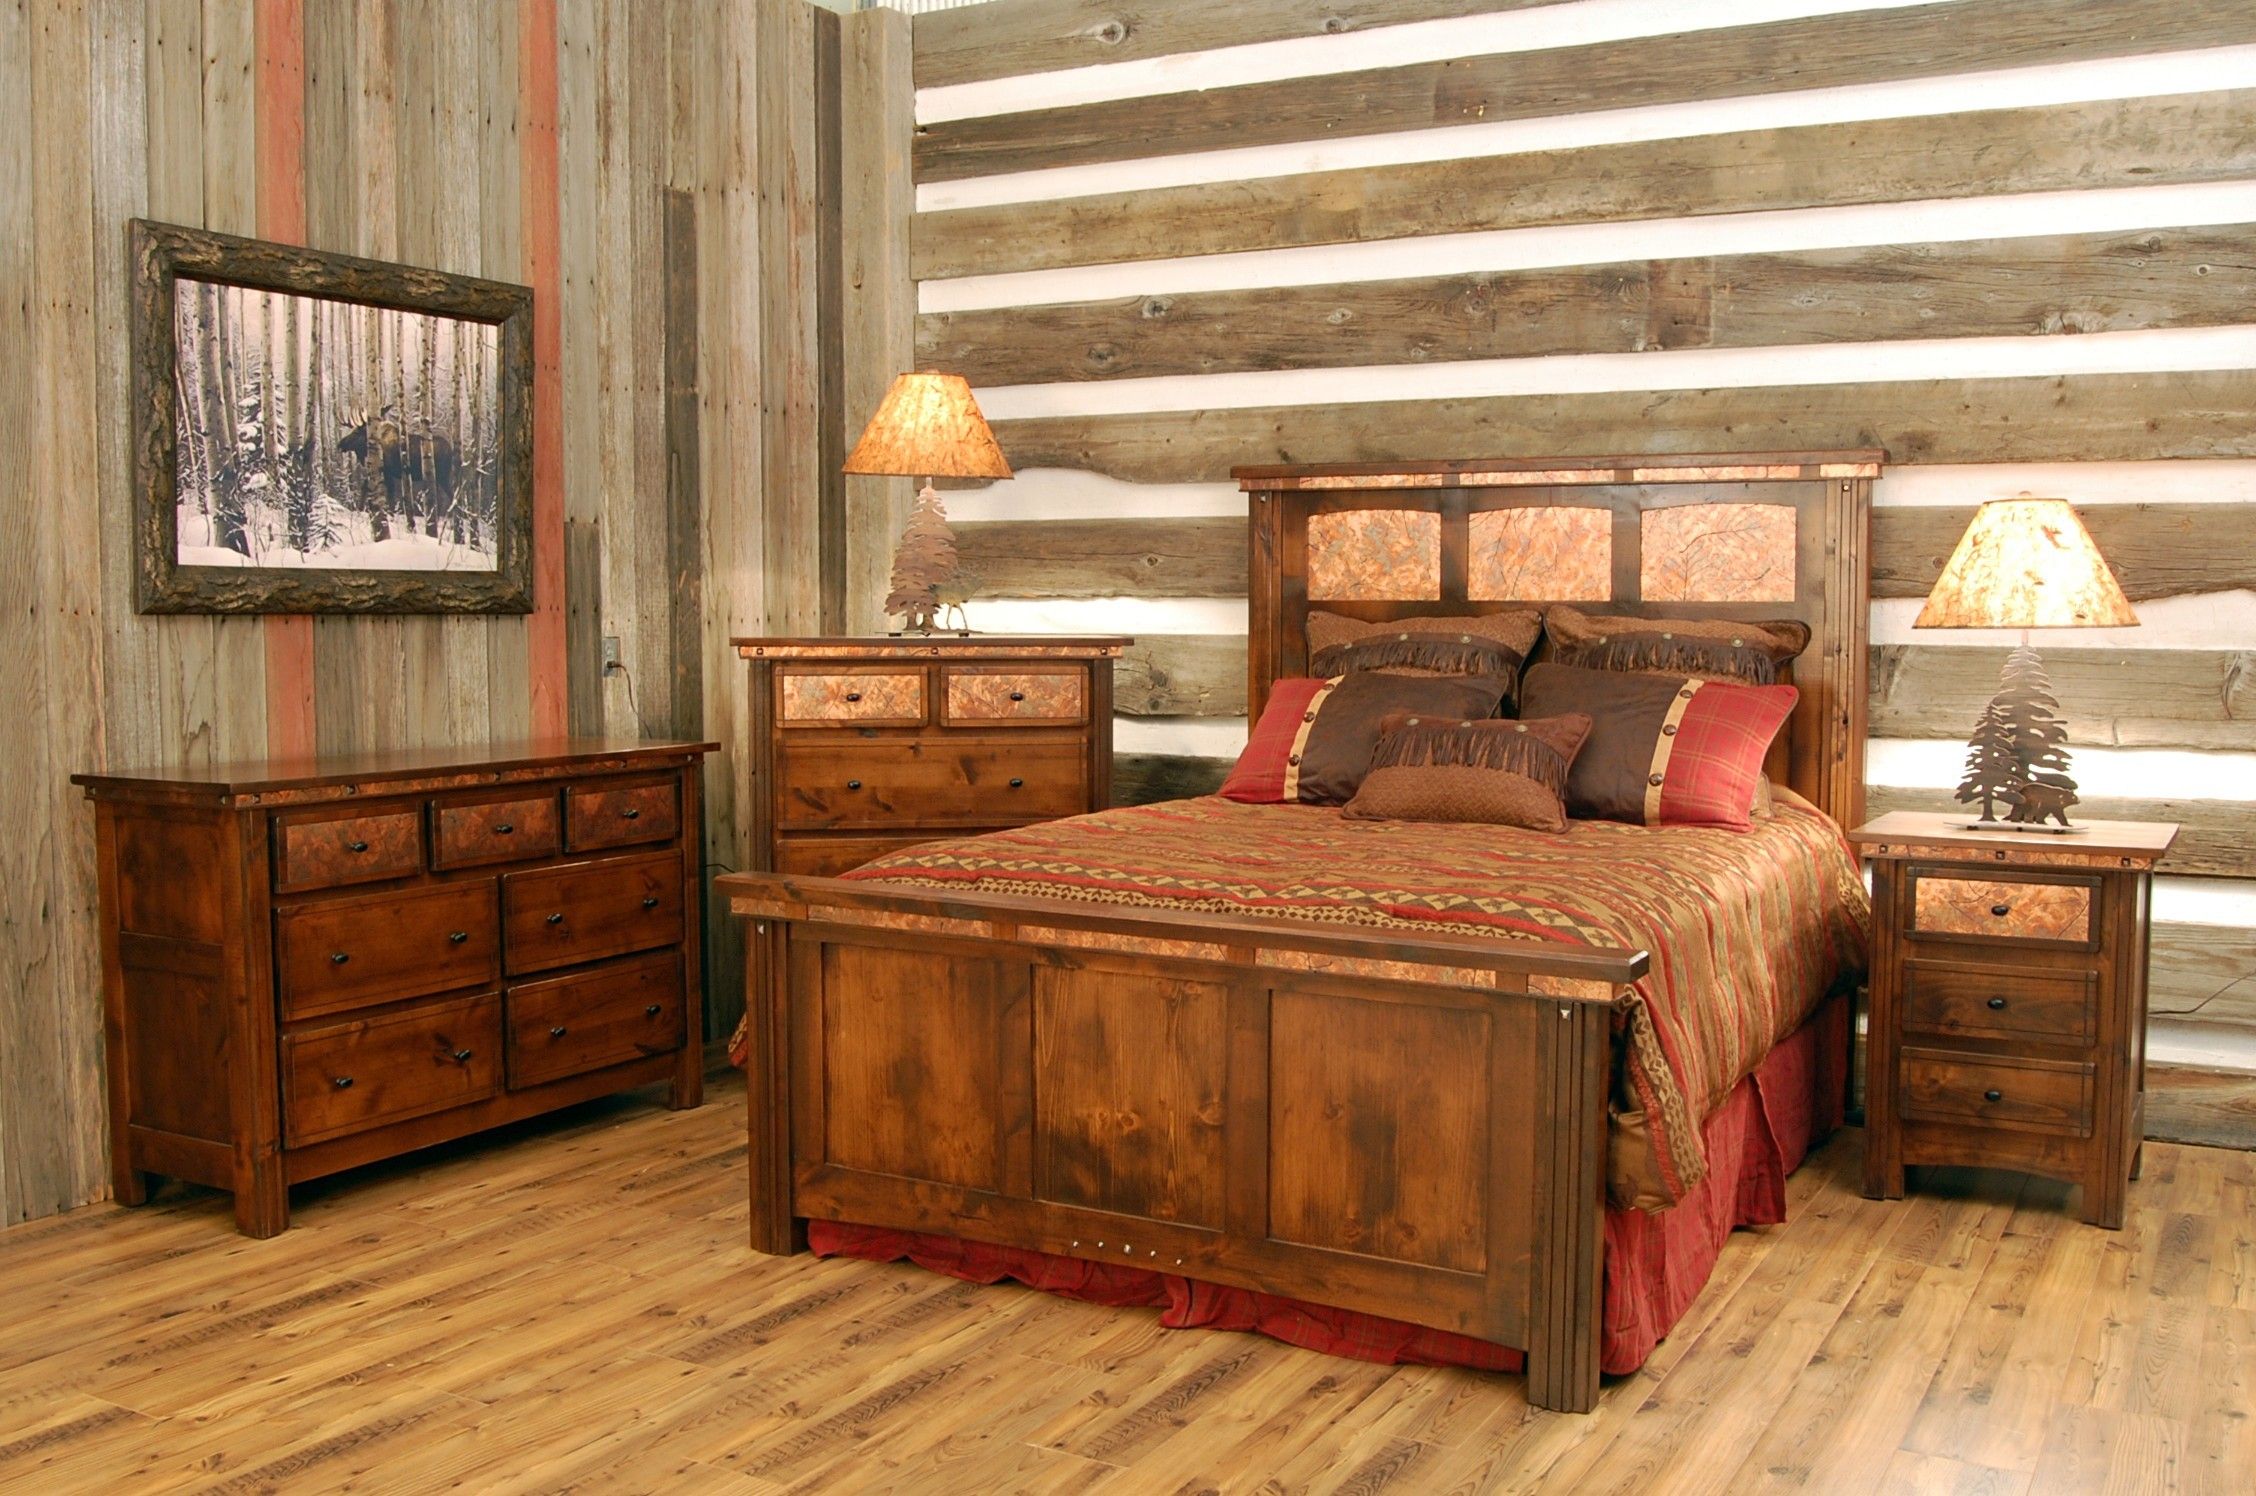 Wooden мебель. Красивая деревянная мебель. Деревянная мебель в интерьере. Мебель из дерева своими руками. Спальня из дерева.